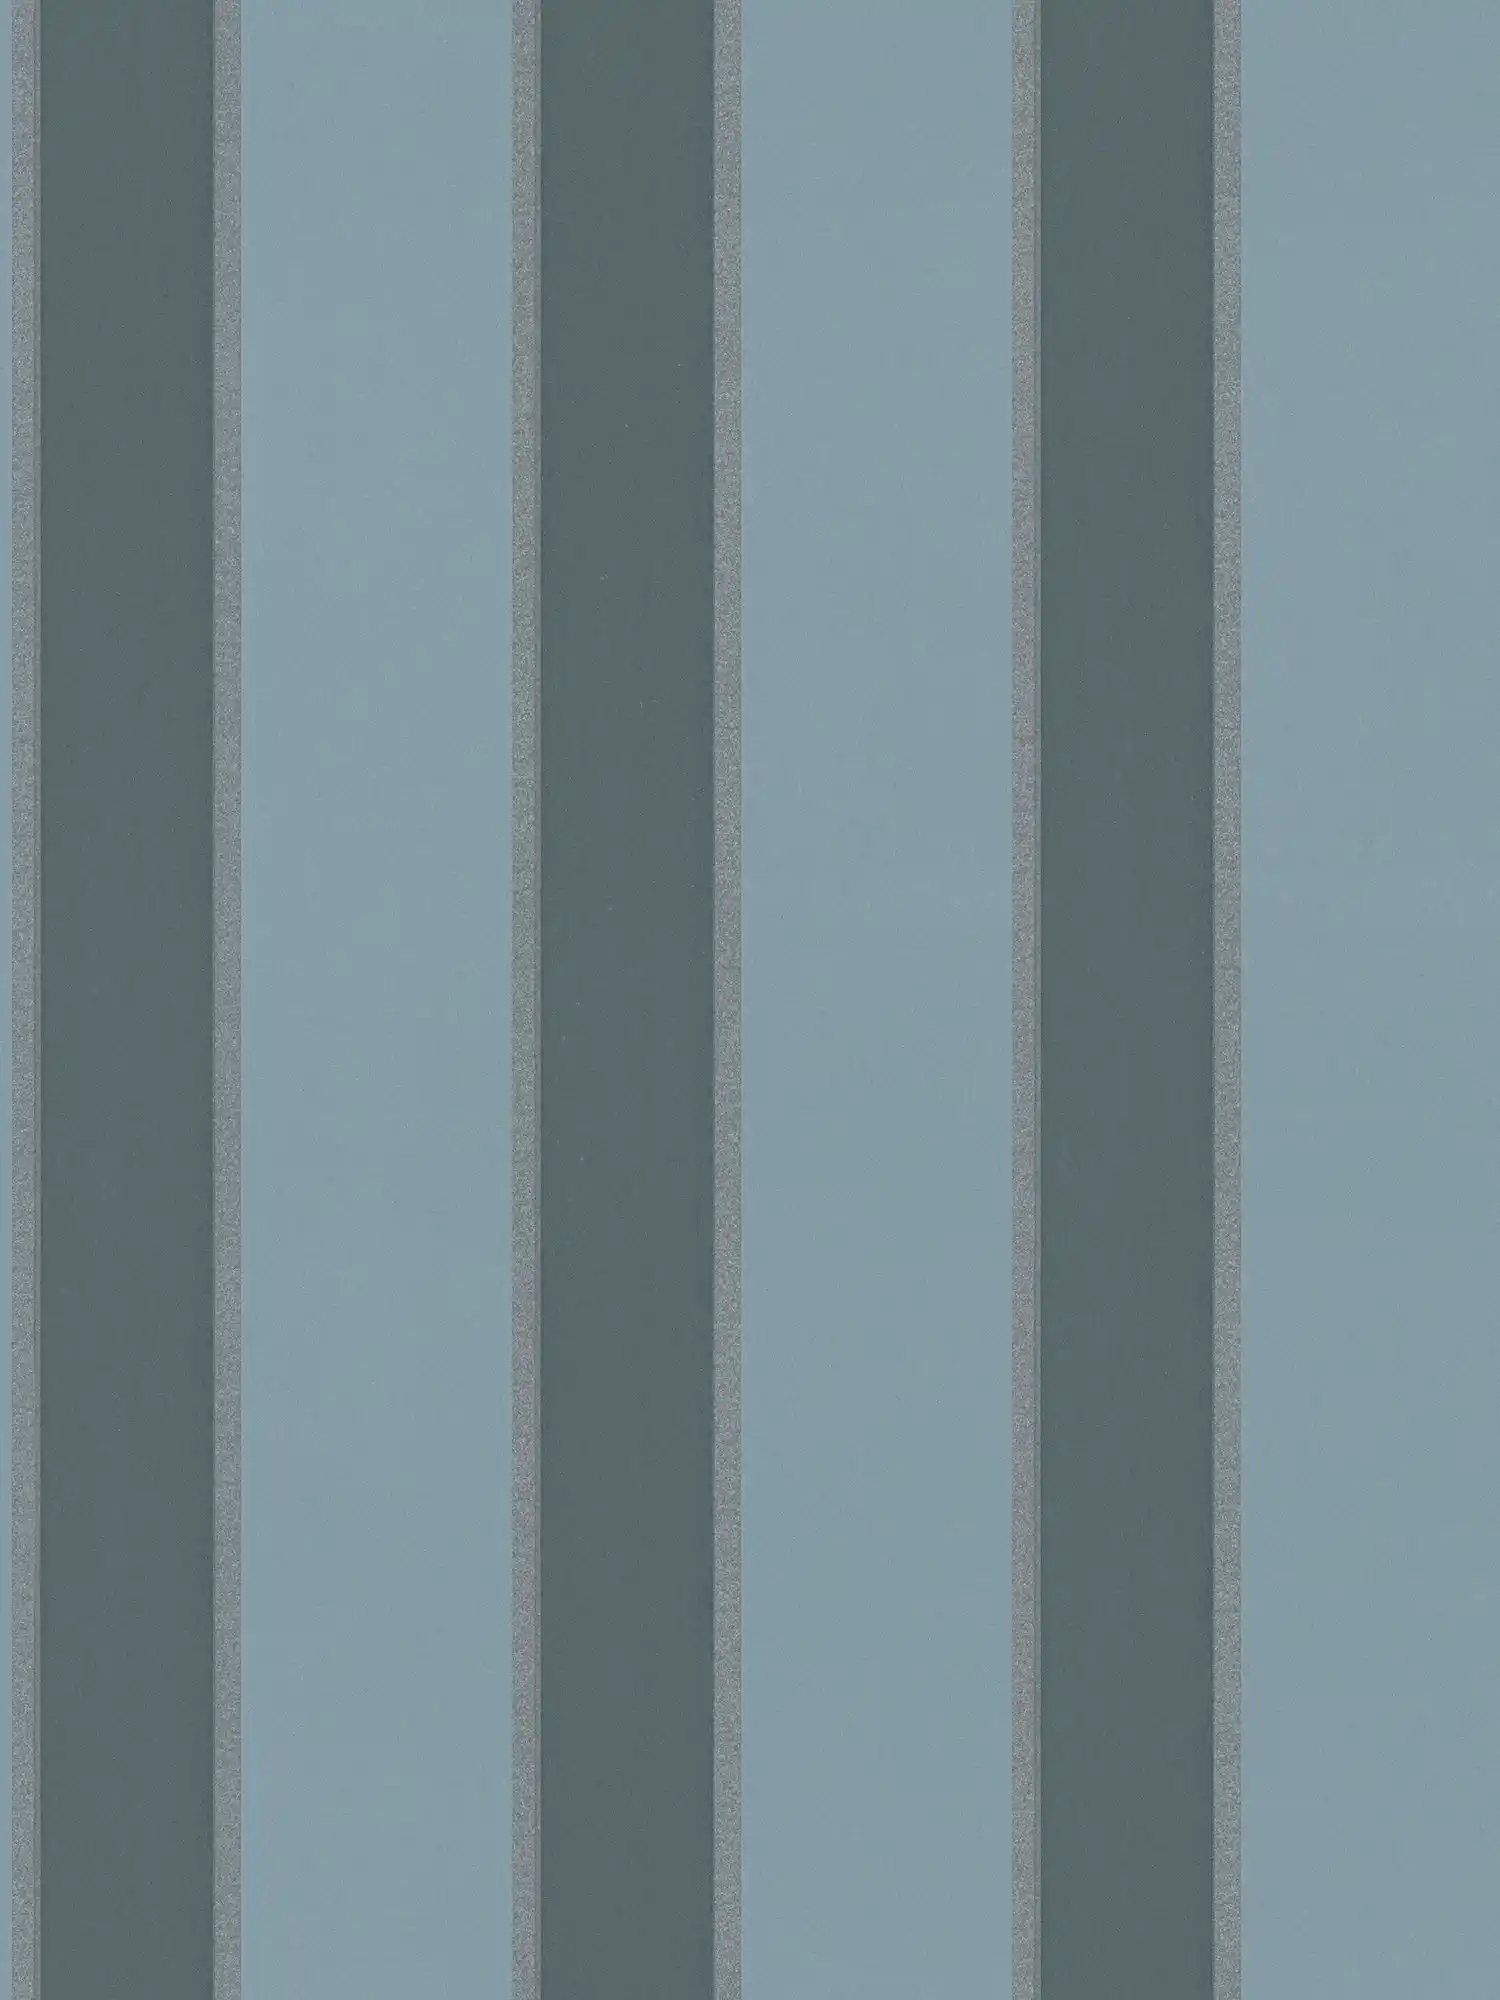 Stripe vliesbehang met metallic accent - blauw
